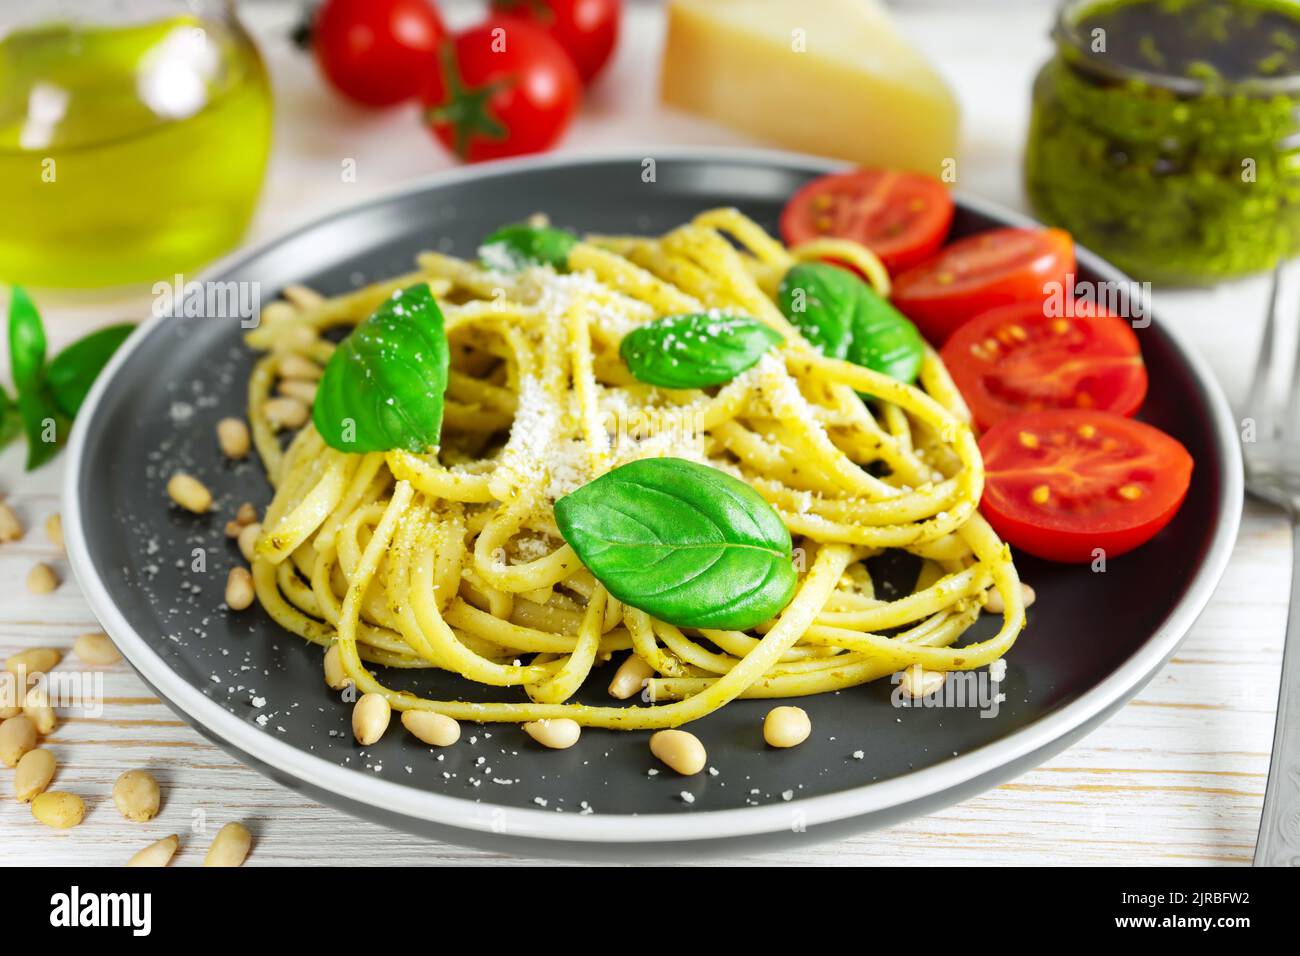 Pasta tradizionale italiana con verdure fresche, parmigiano, foglie di basilico, pinoli e salsa al pesto in piatto nero su fondo di legno bianco. Foto Stock